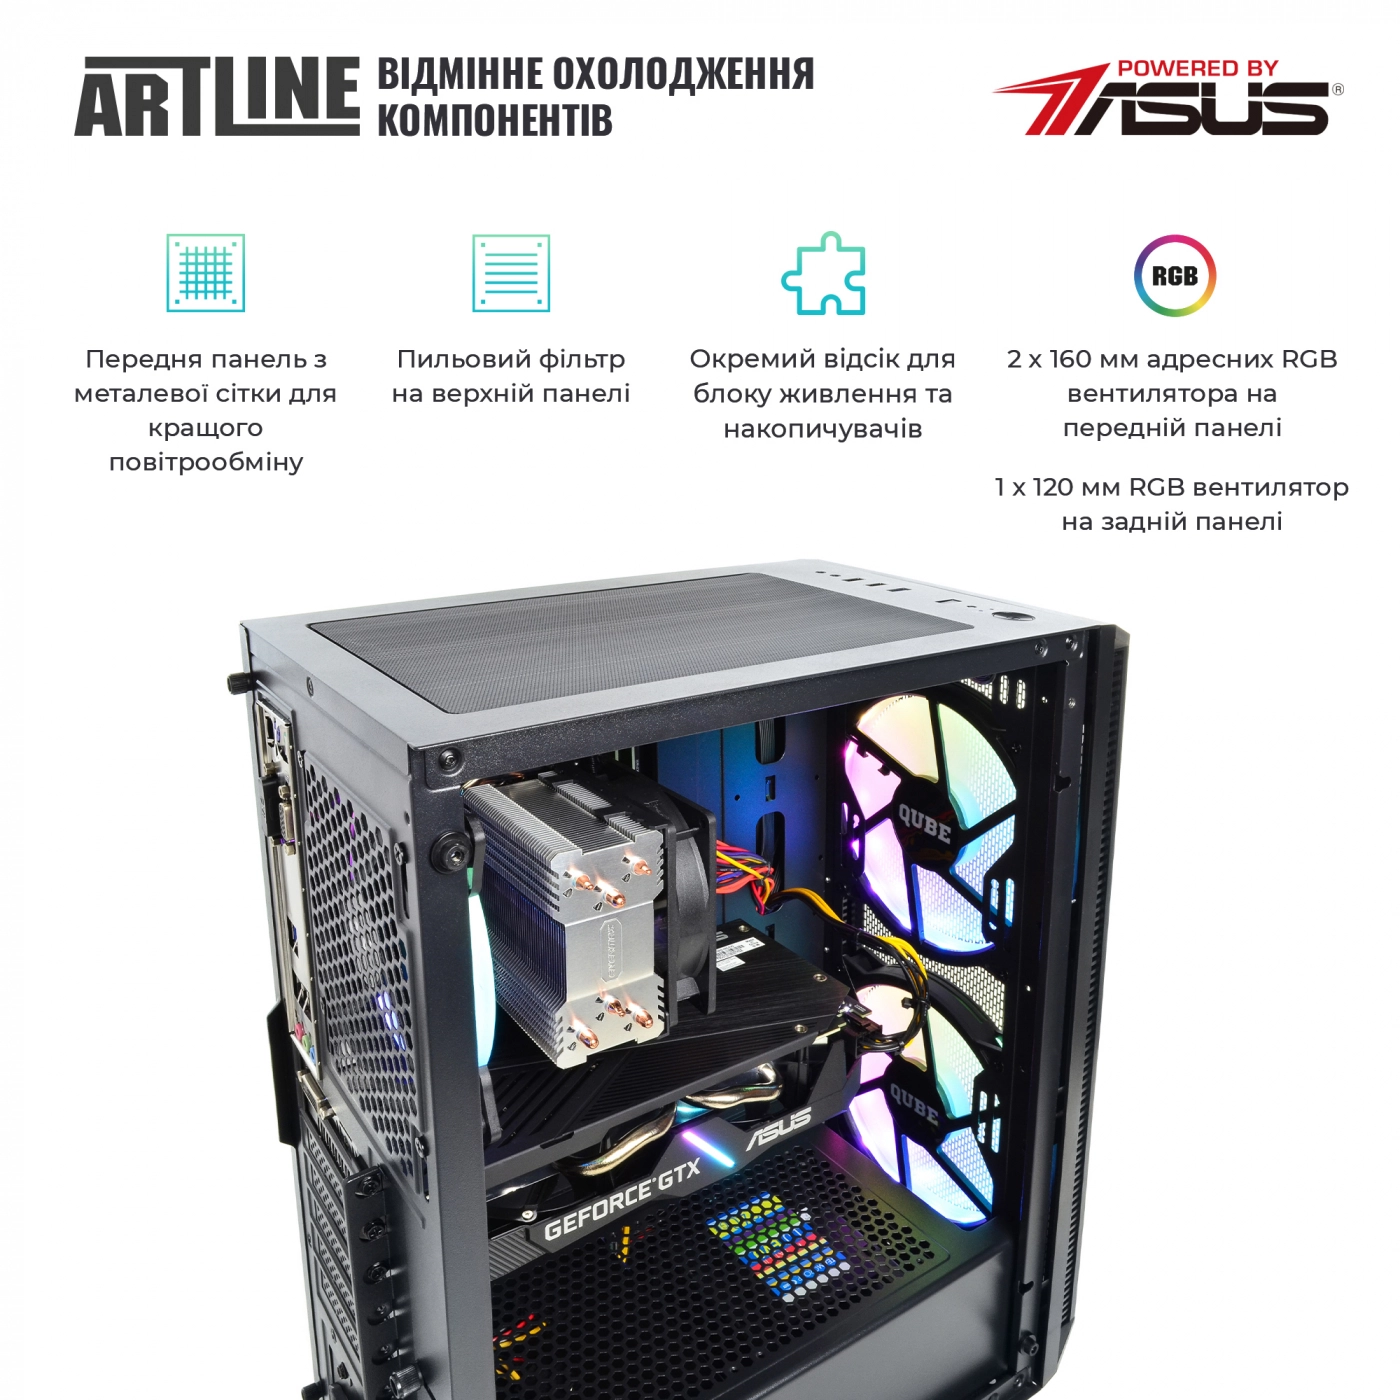 Купить Компьютер ARTLINE Gaming X53v22 - фото 2